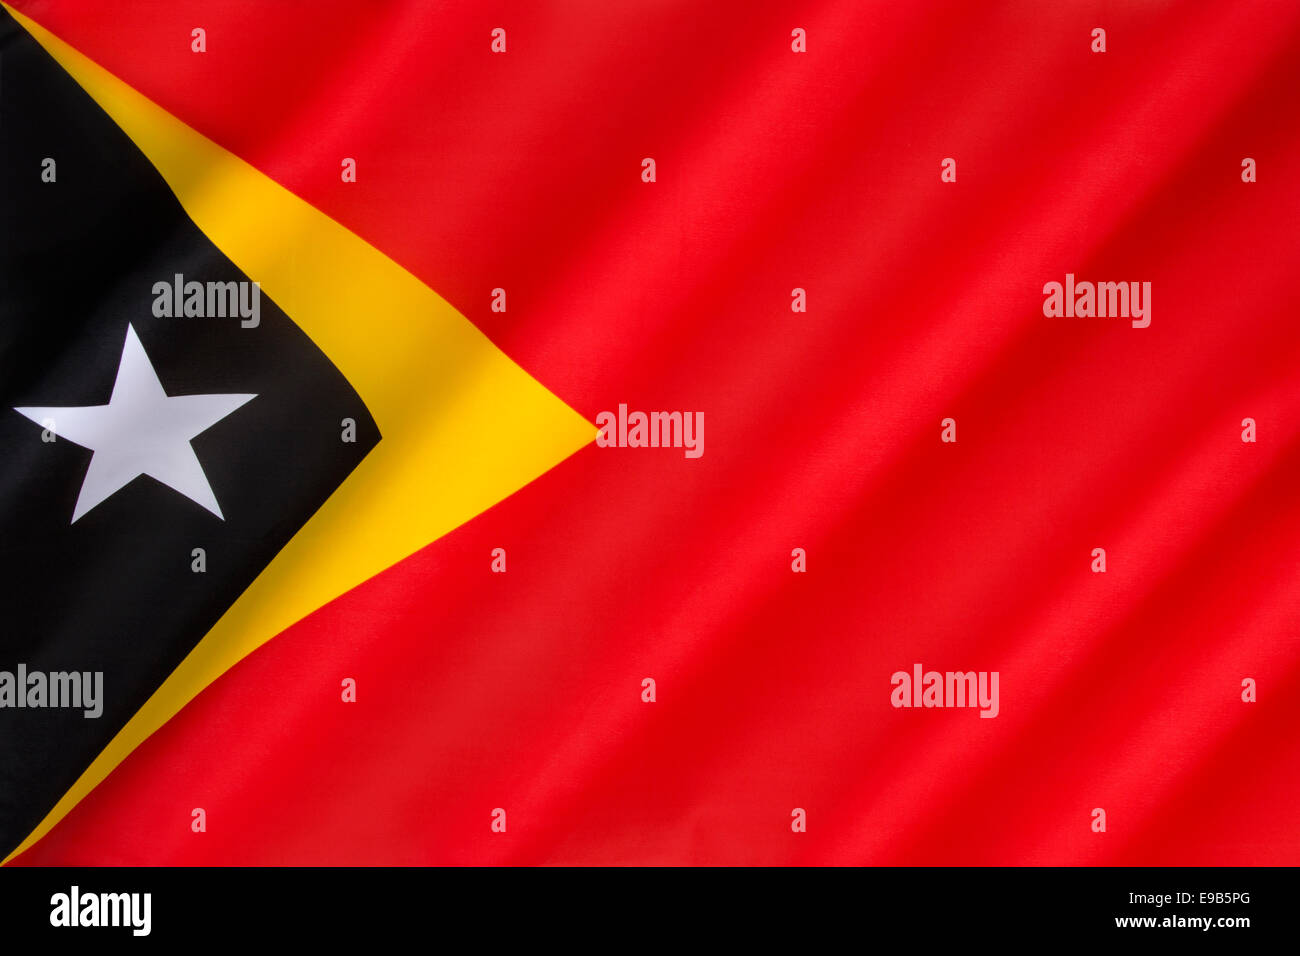 Drapeau de la République démocratique du Timor-Leste - Timor Oriental Banque D'Images